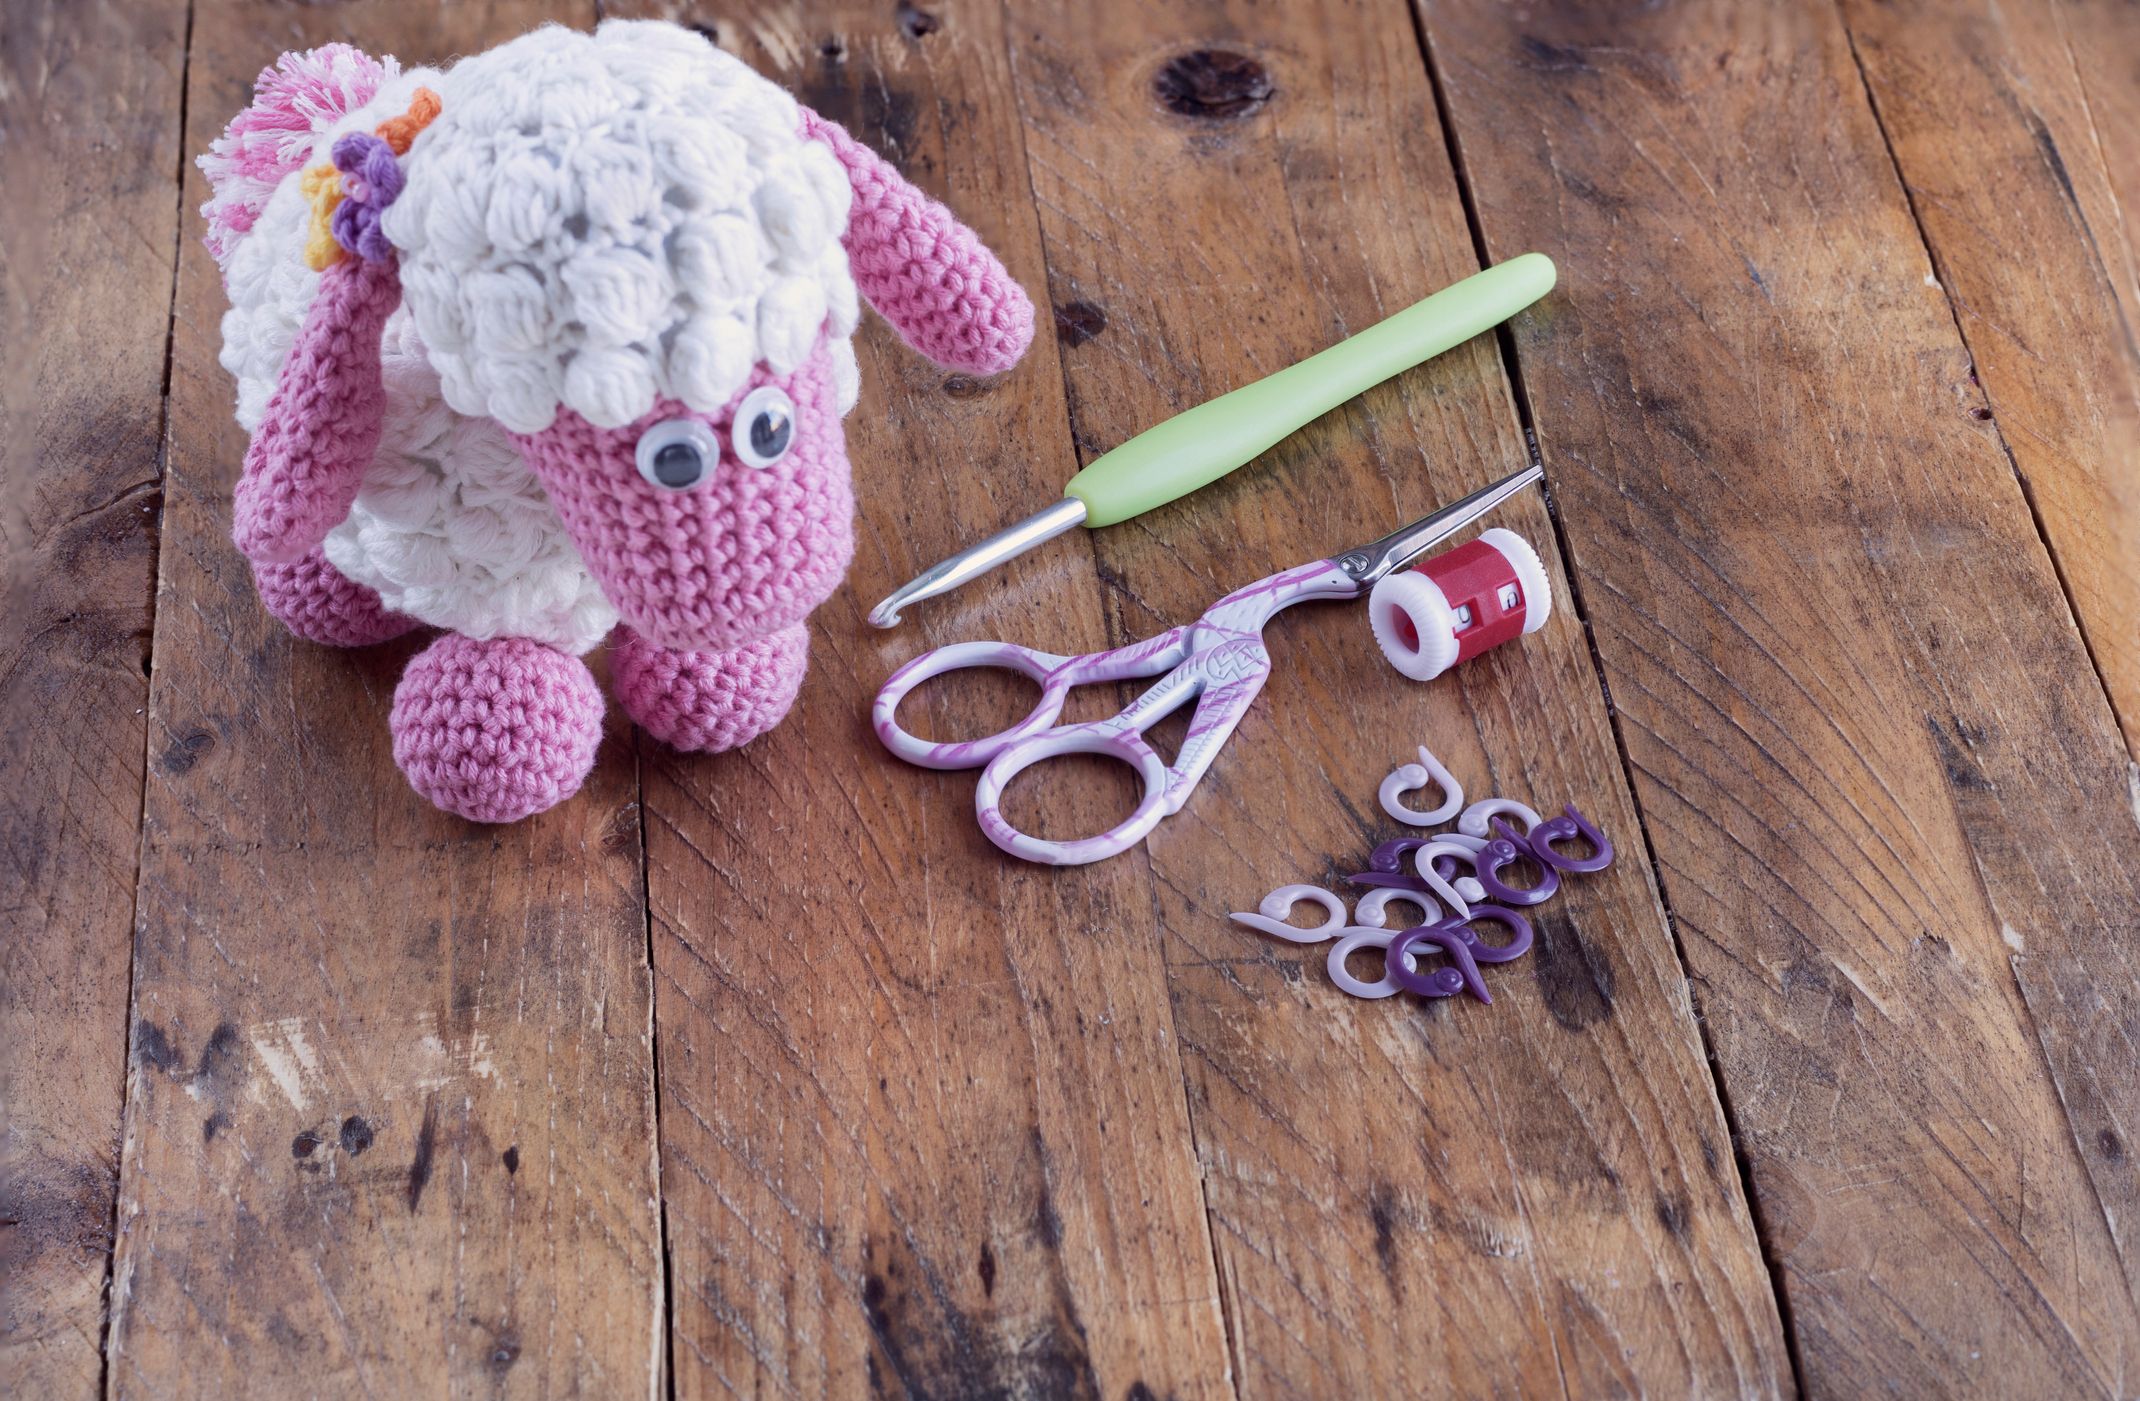 Easy Crochet - le livre pour les débutants en crochet — WoolKiss